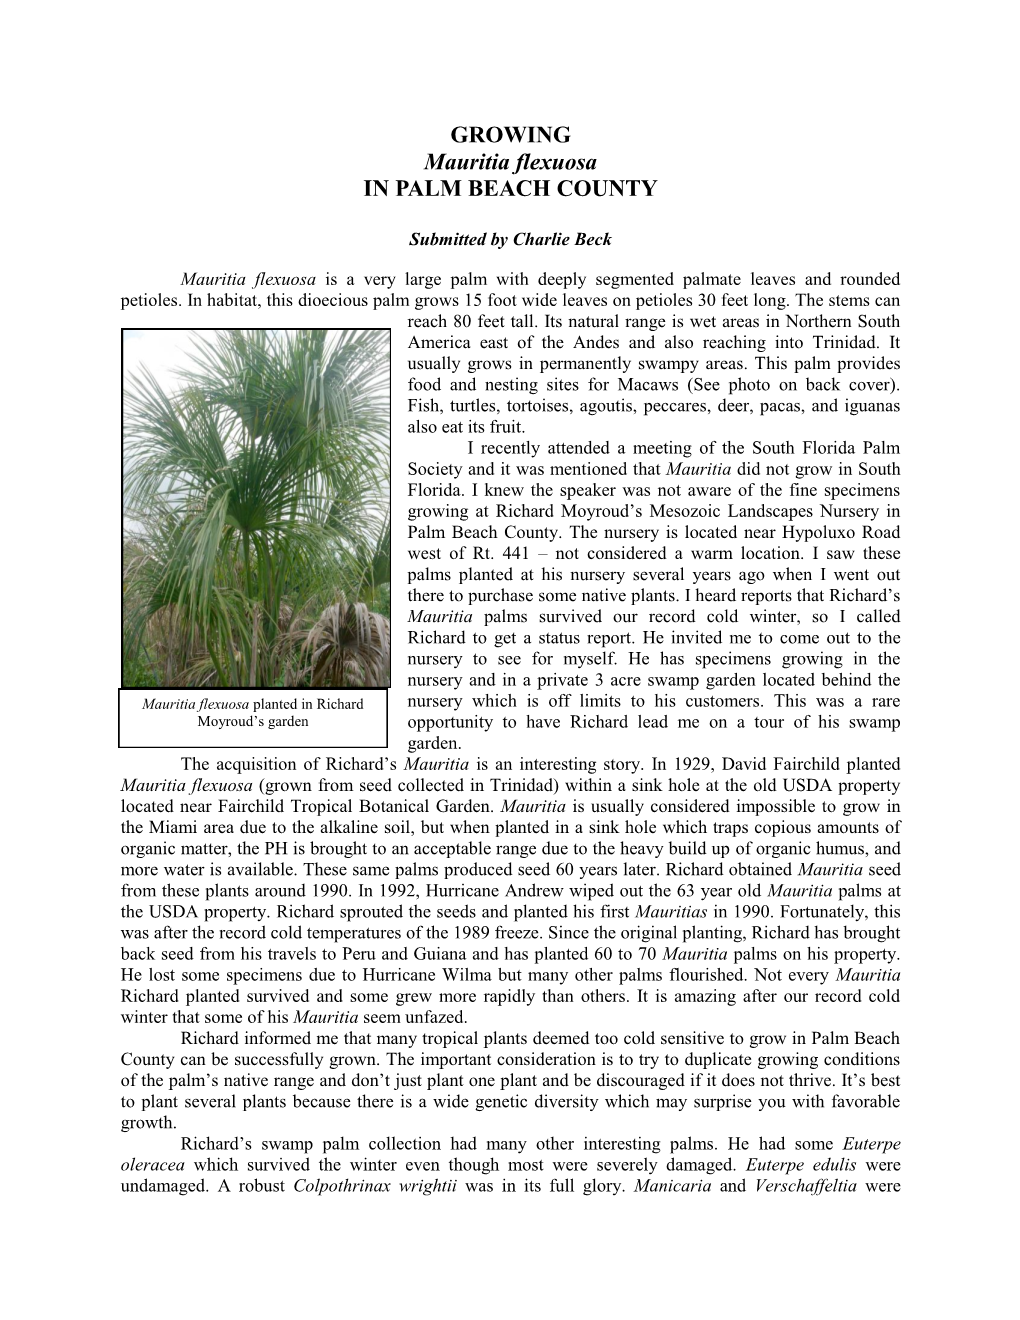 GROWING Mauritia Flexuosa in PALM BEACH COUNTY